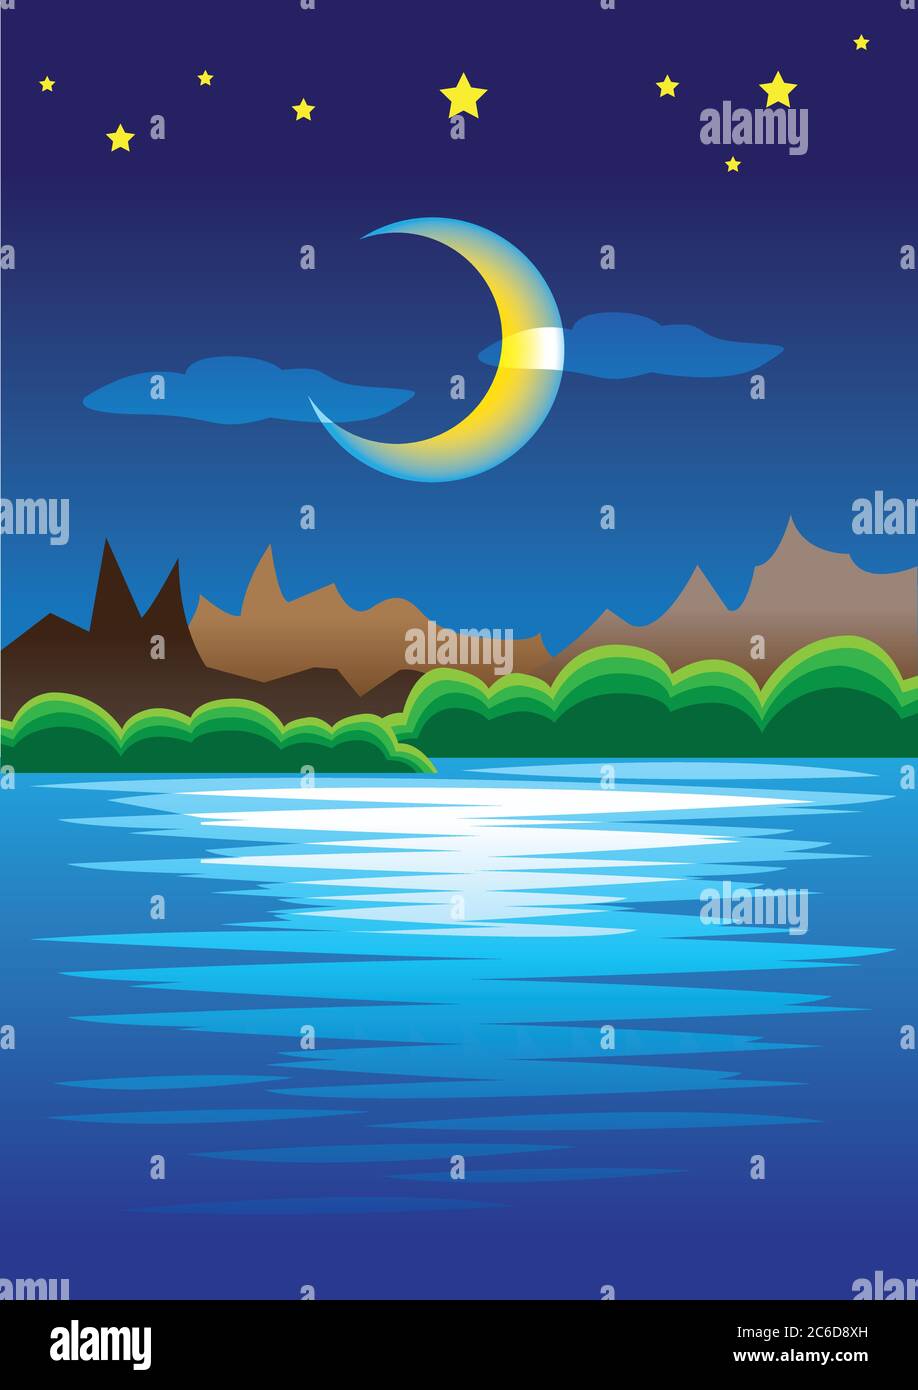 Illustrazione vettoriale della scena della natura con montagne e lago in stellata notte silenziosa con grande luna mezzaluna. Illustrazione Vettoriale